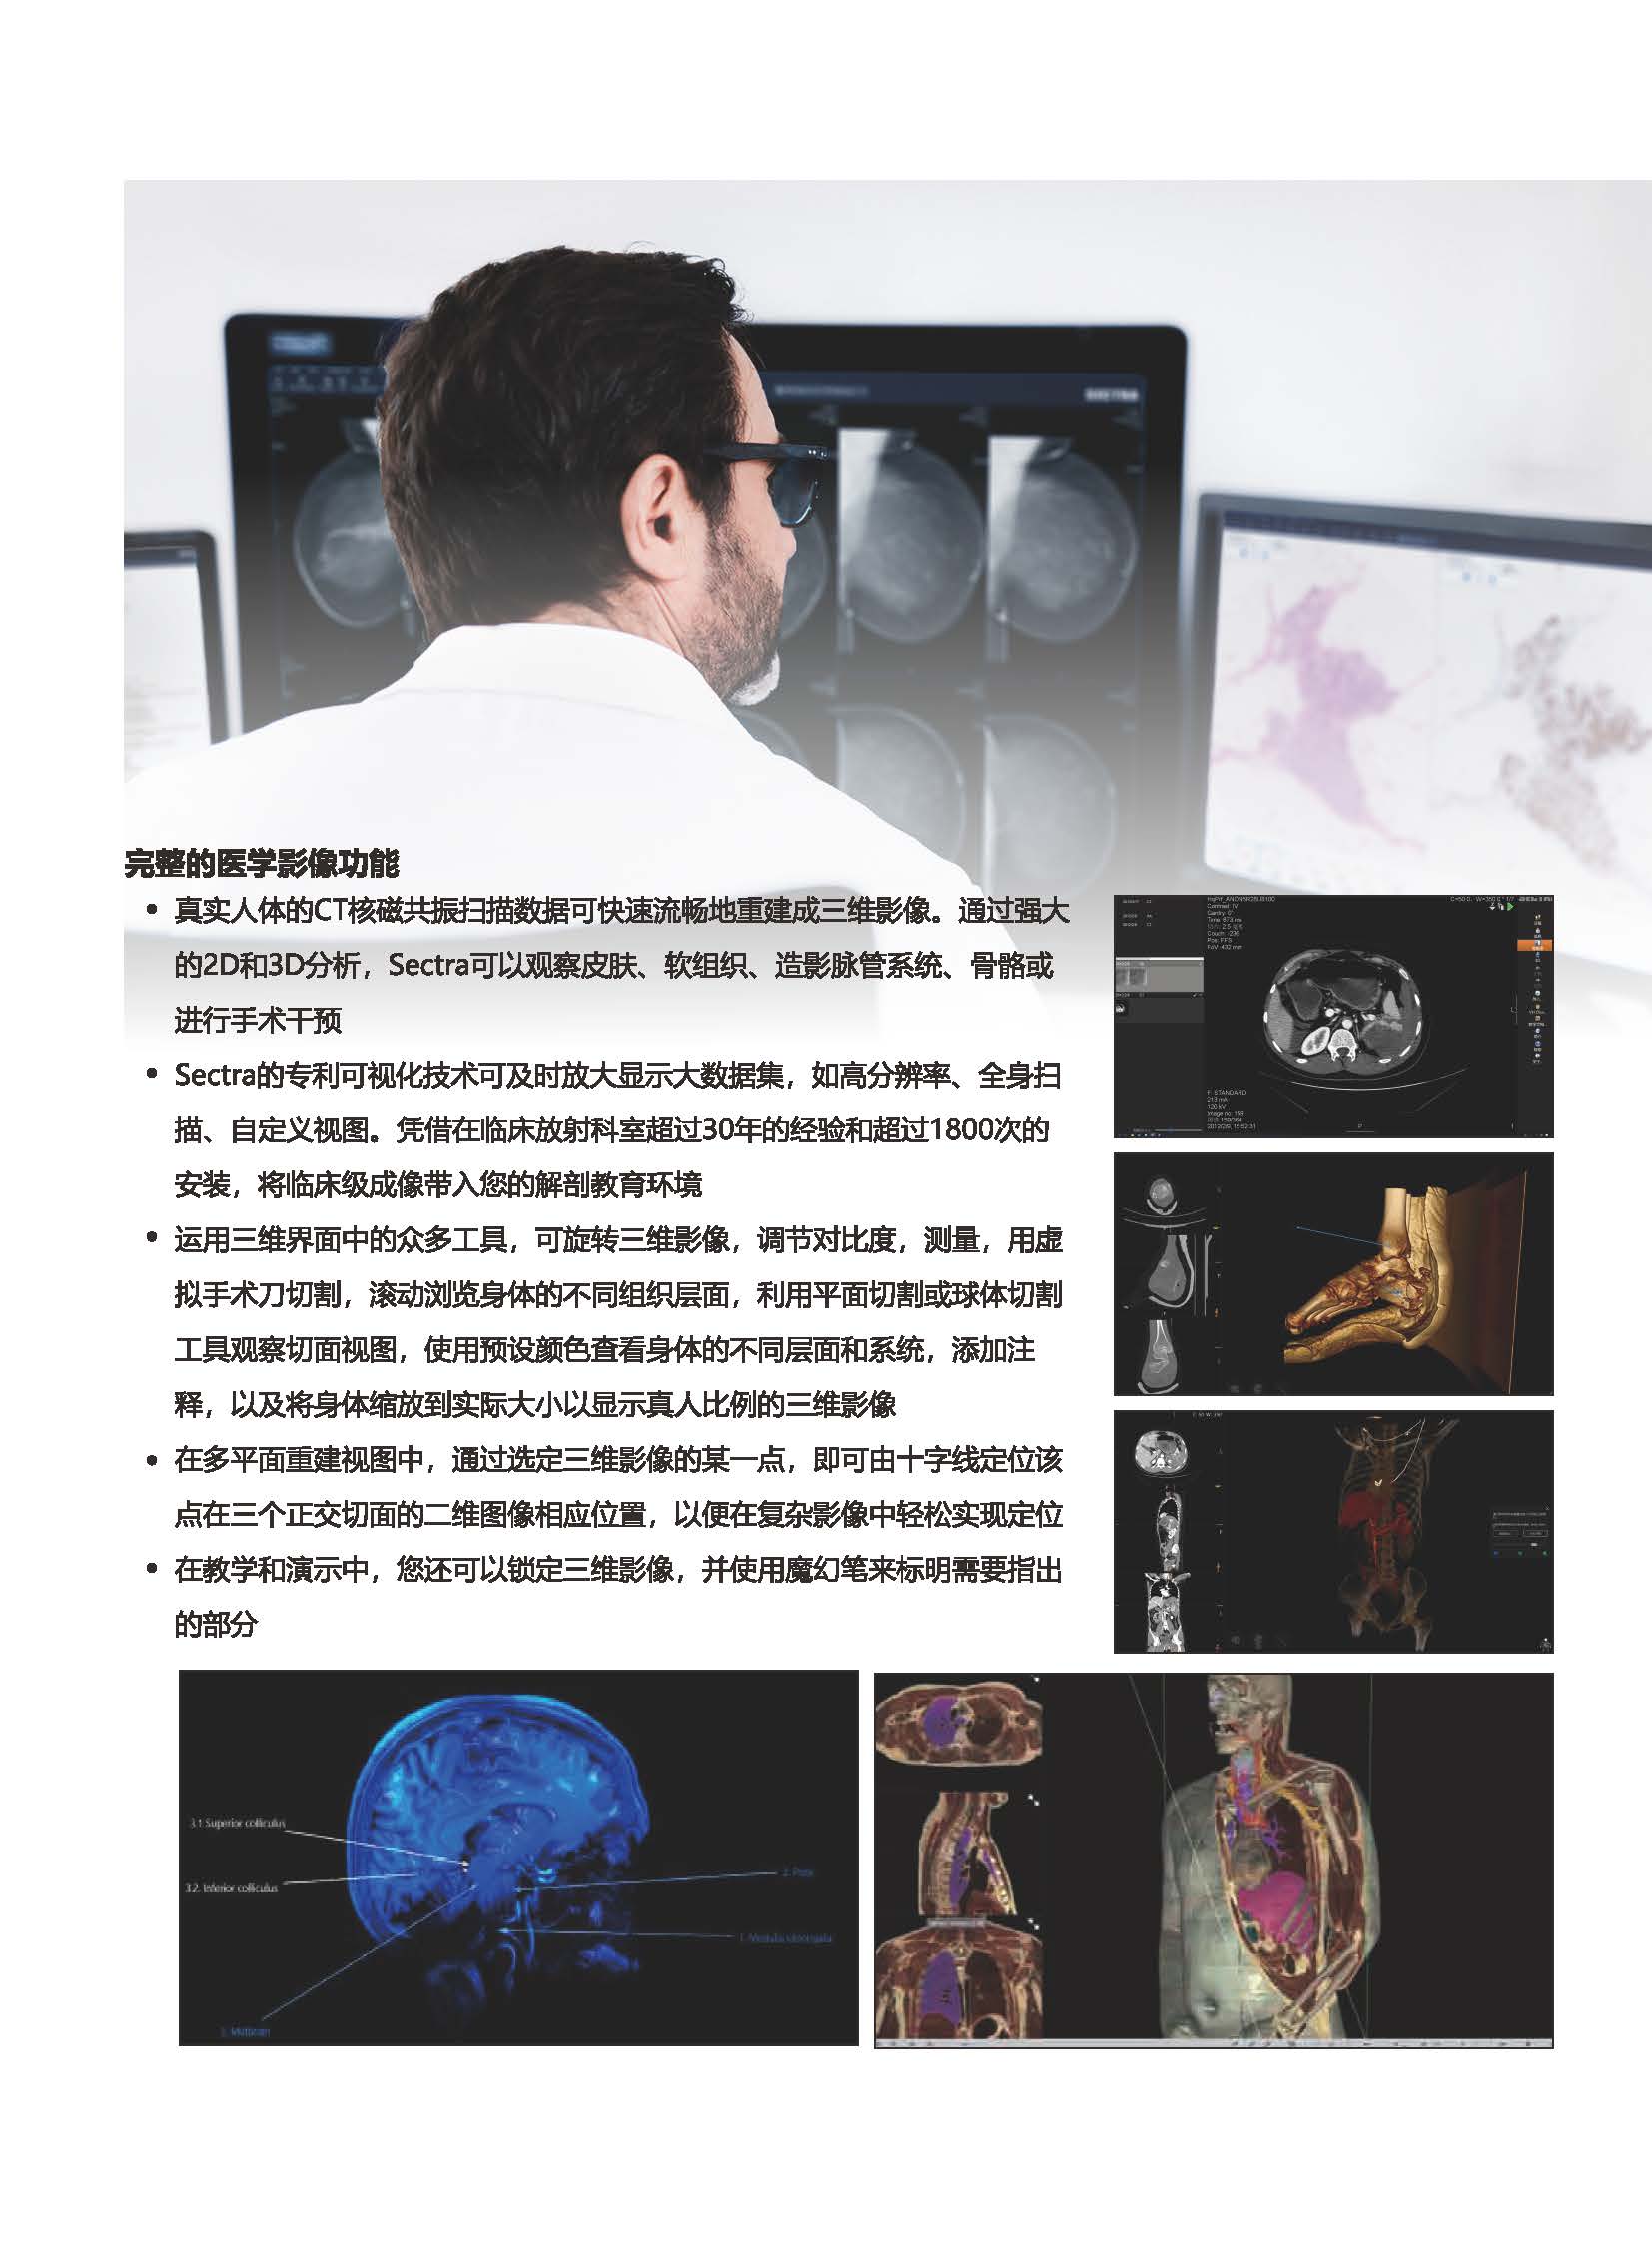 多点触控虚拟解剖教学平台官网用_页面_3.jpg